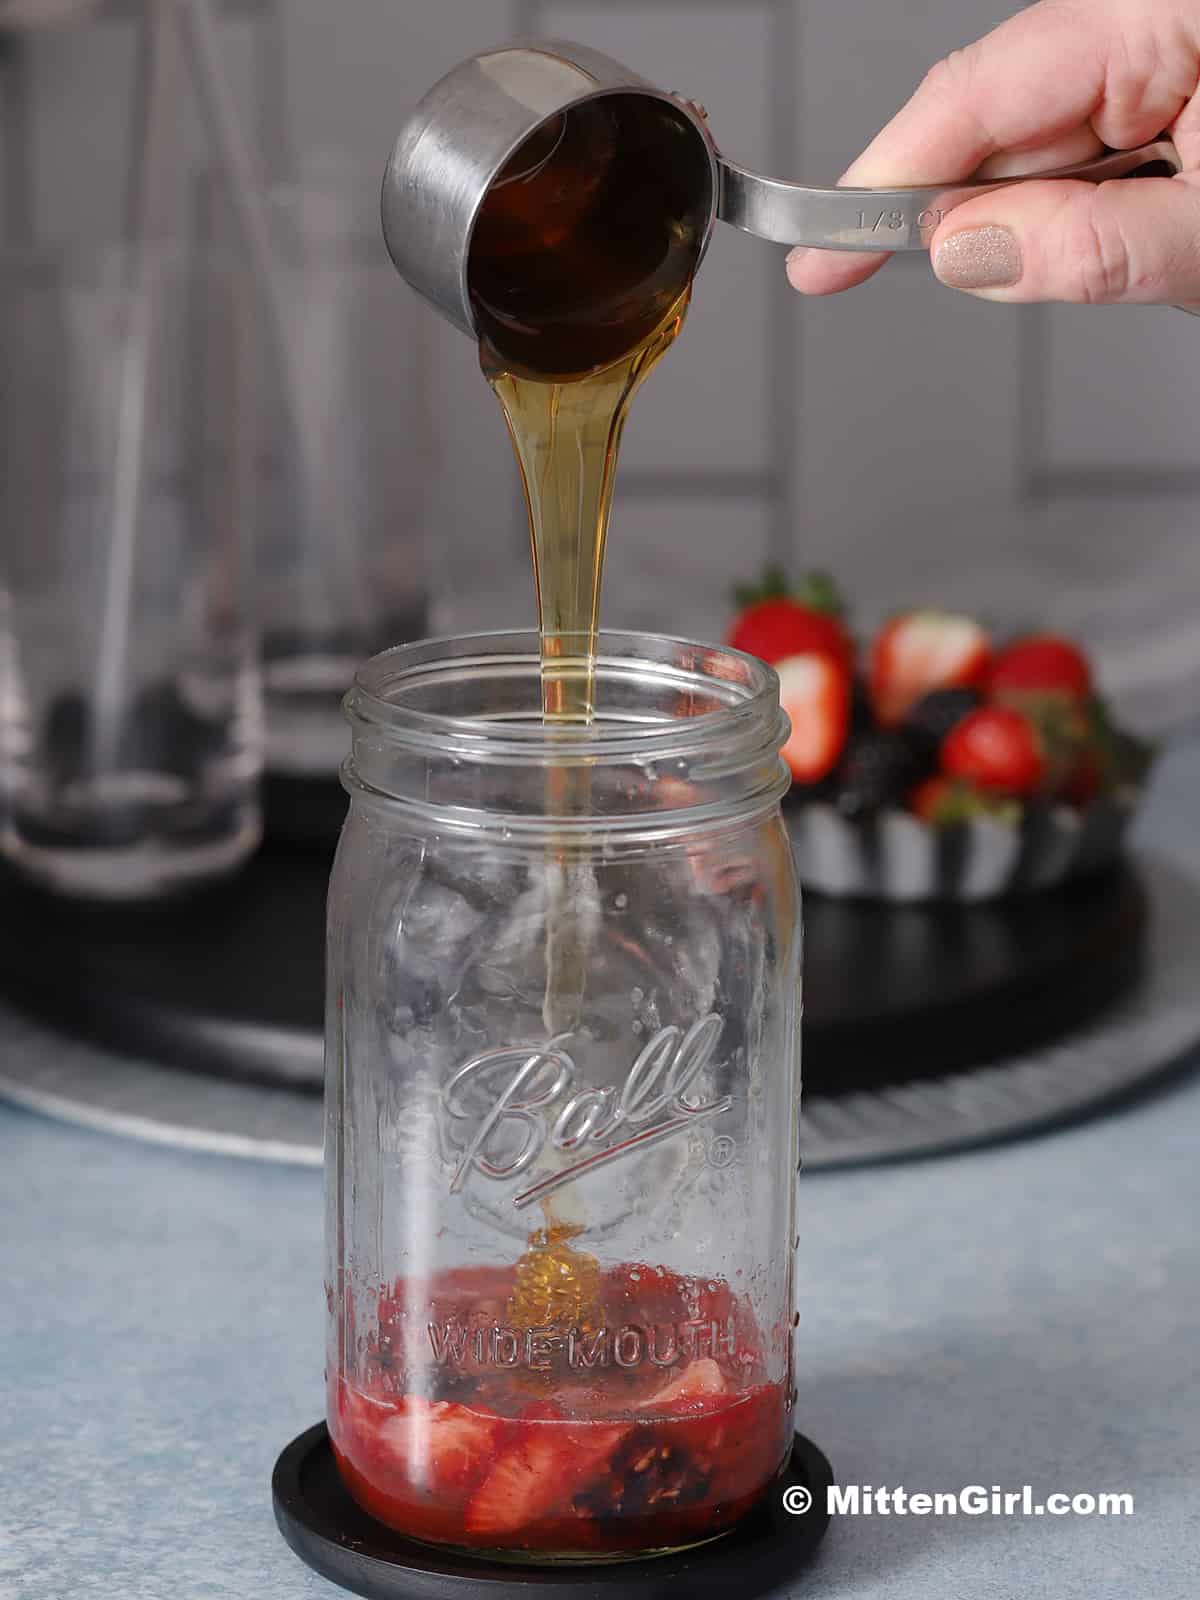 Honey being poured into a quart jar.